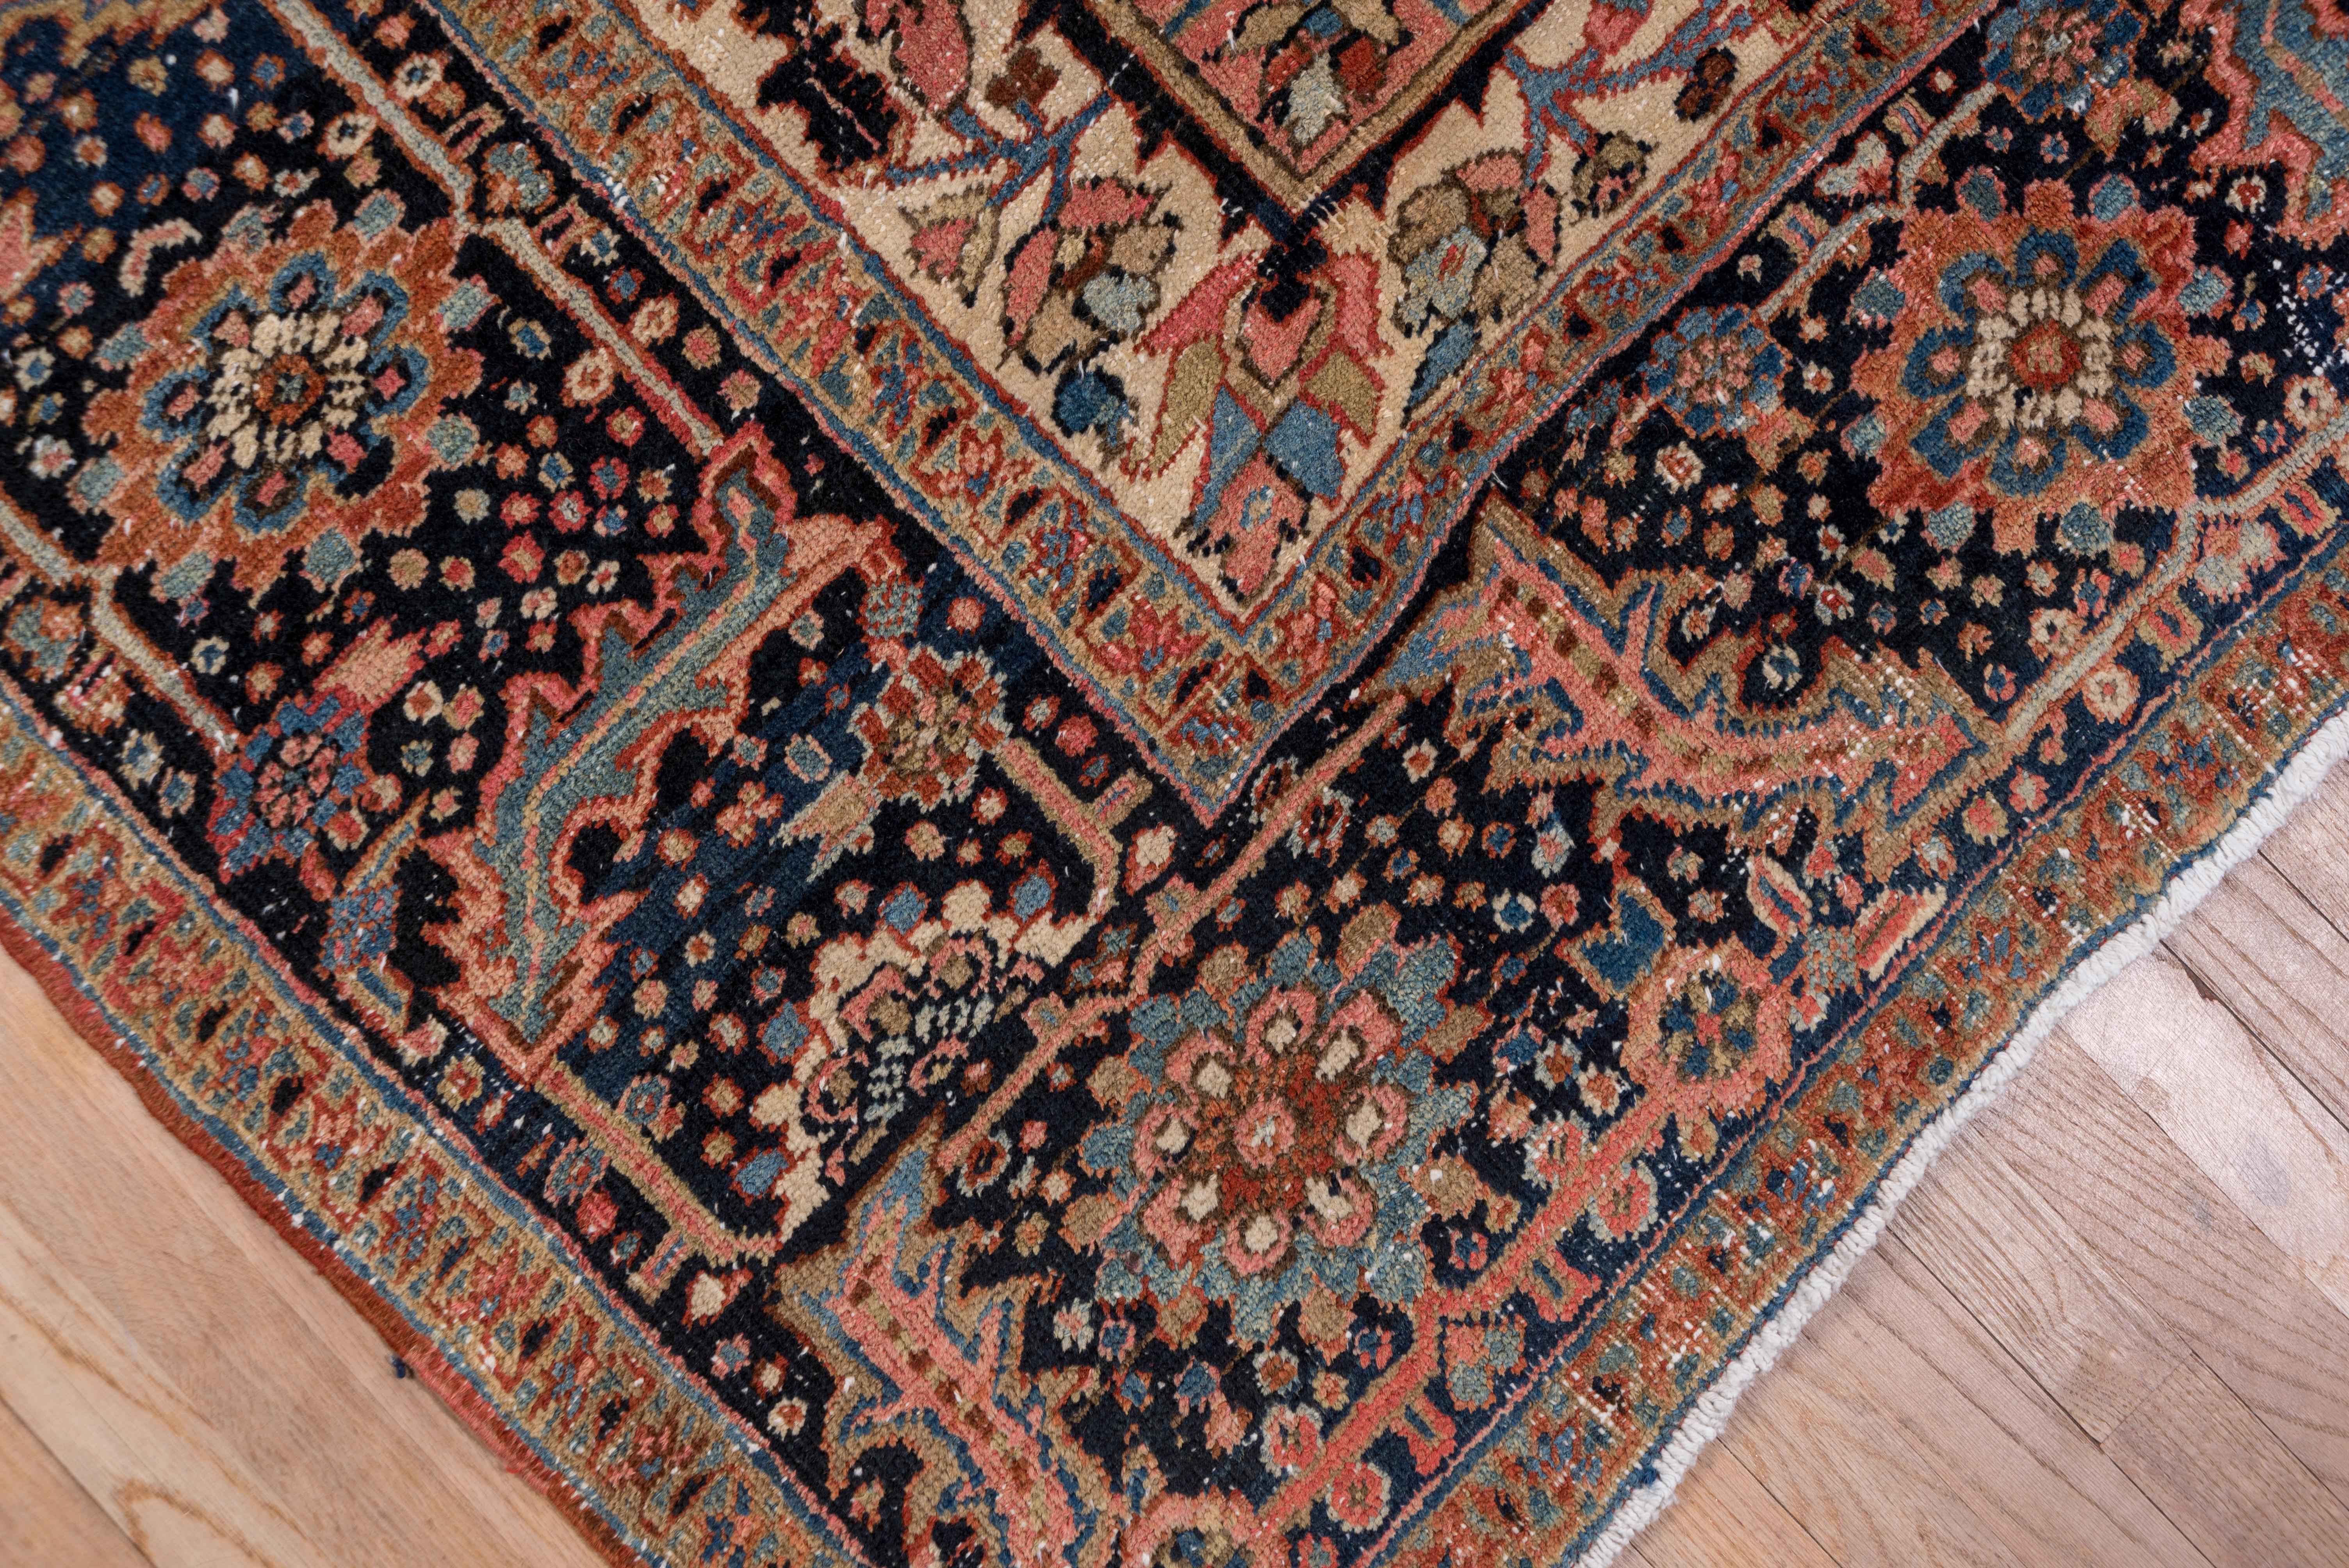 Persian Formal and Rustic Antique Heriz Carpet